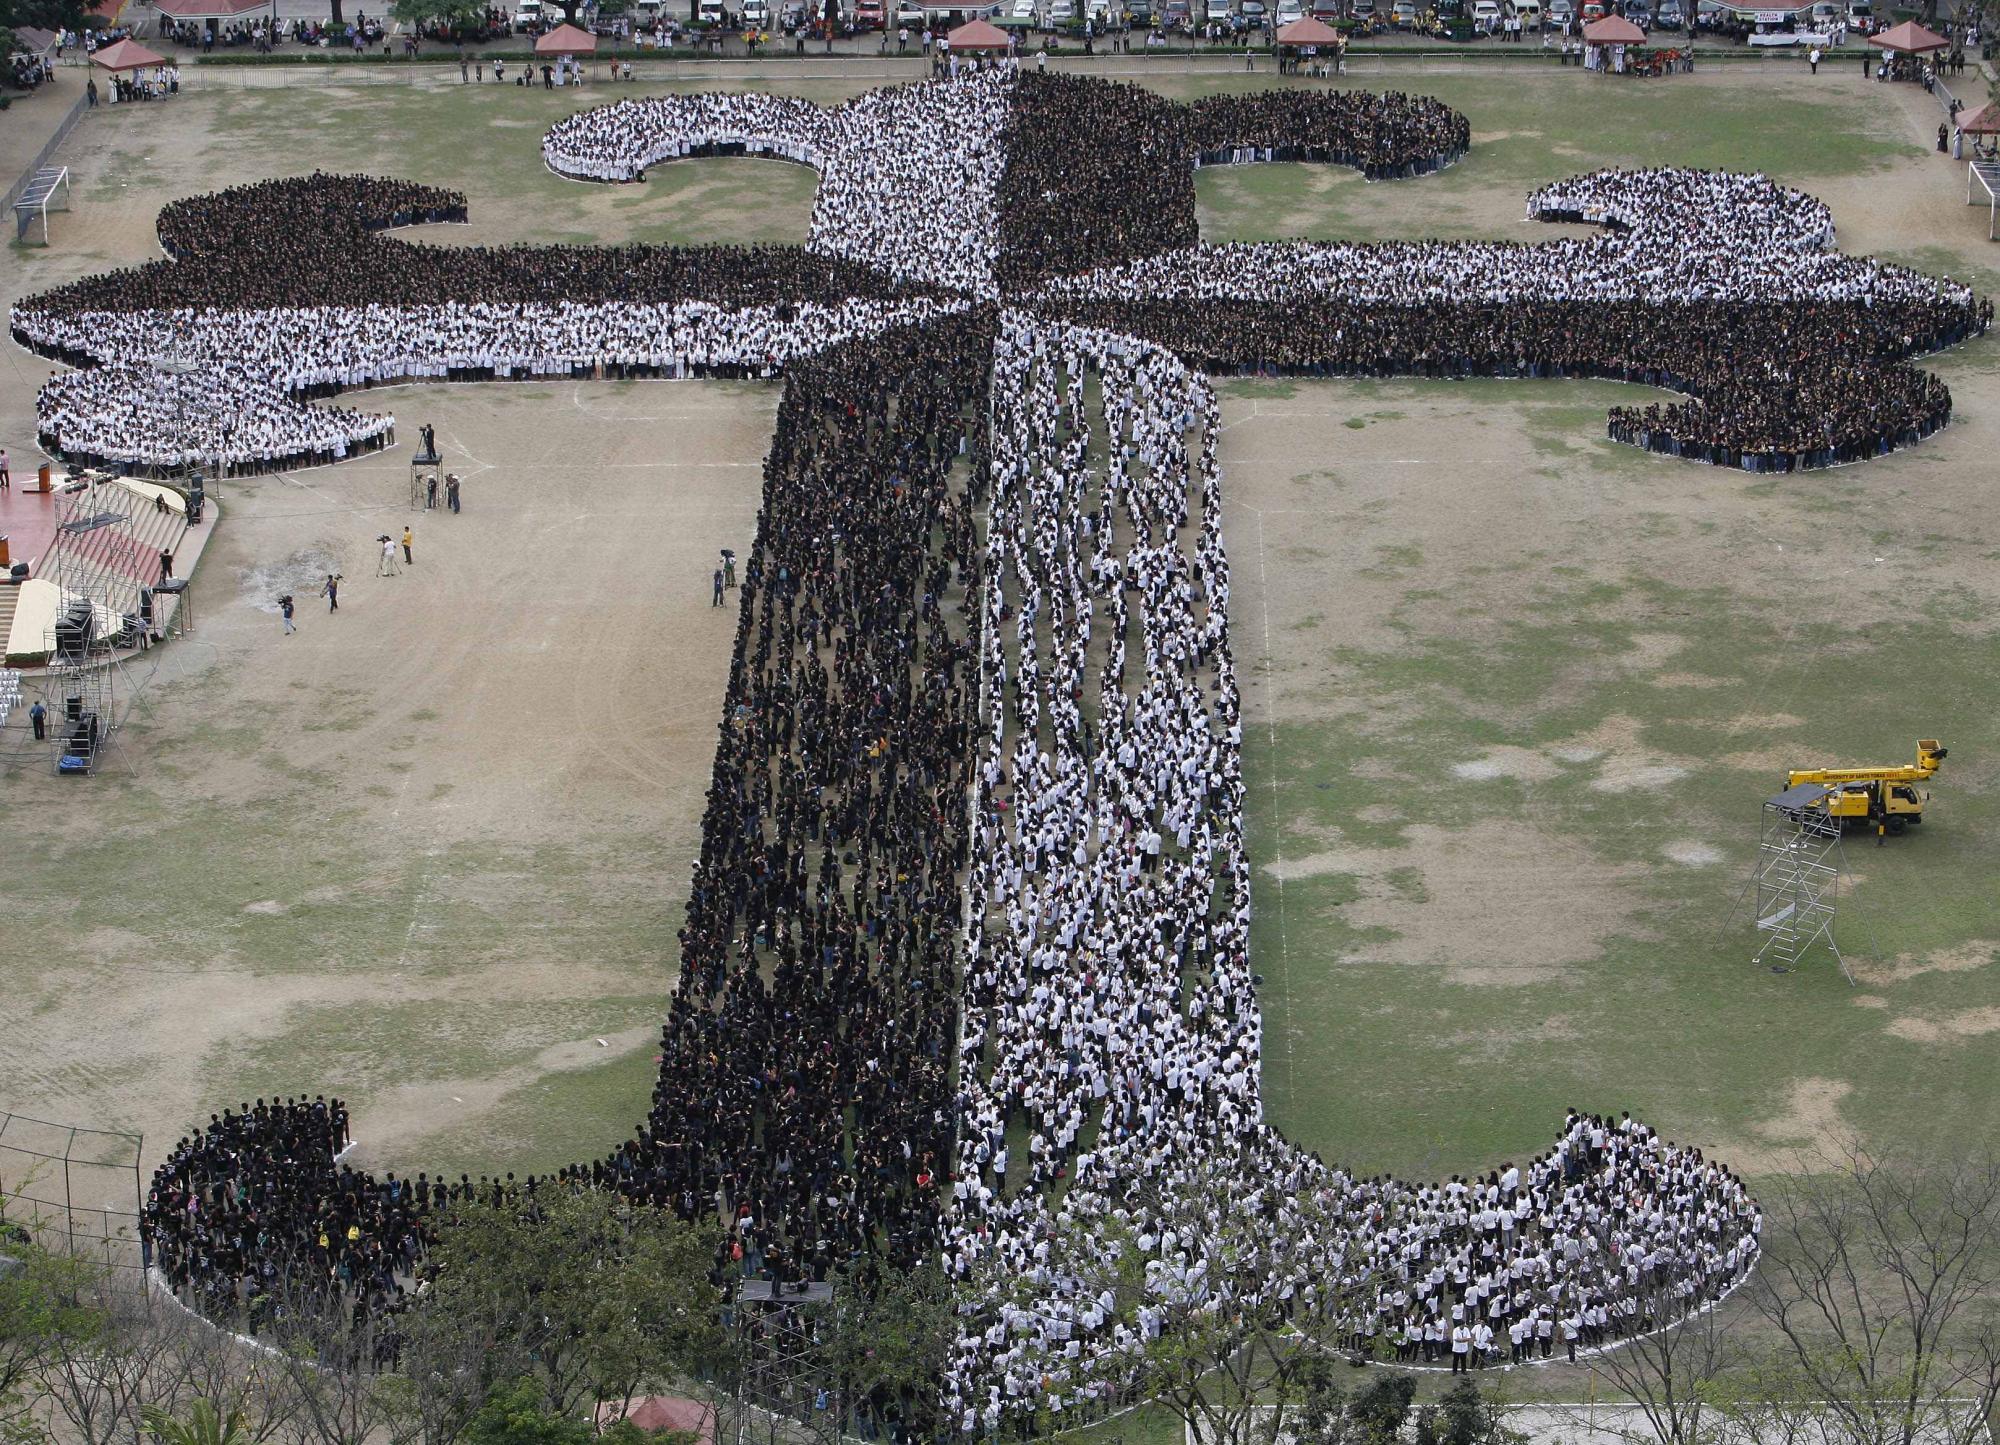 菲律宾两万师生将打破“世界最大人体十字架”纪录